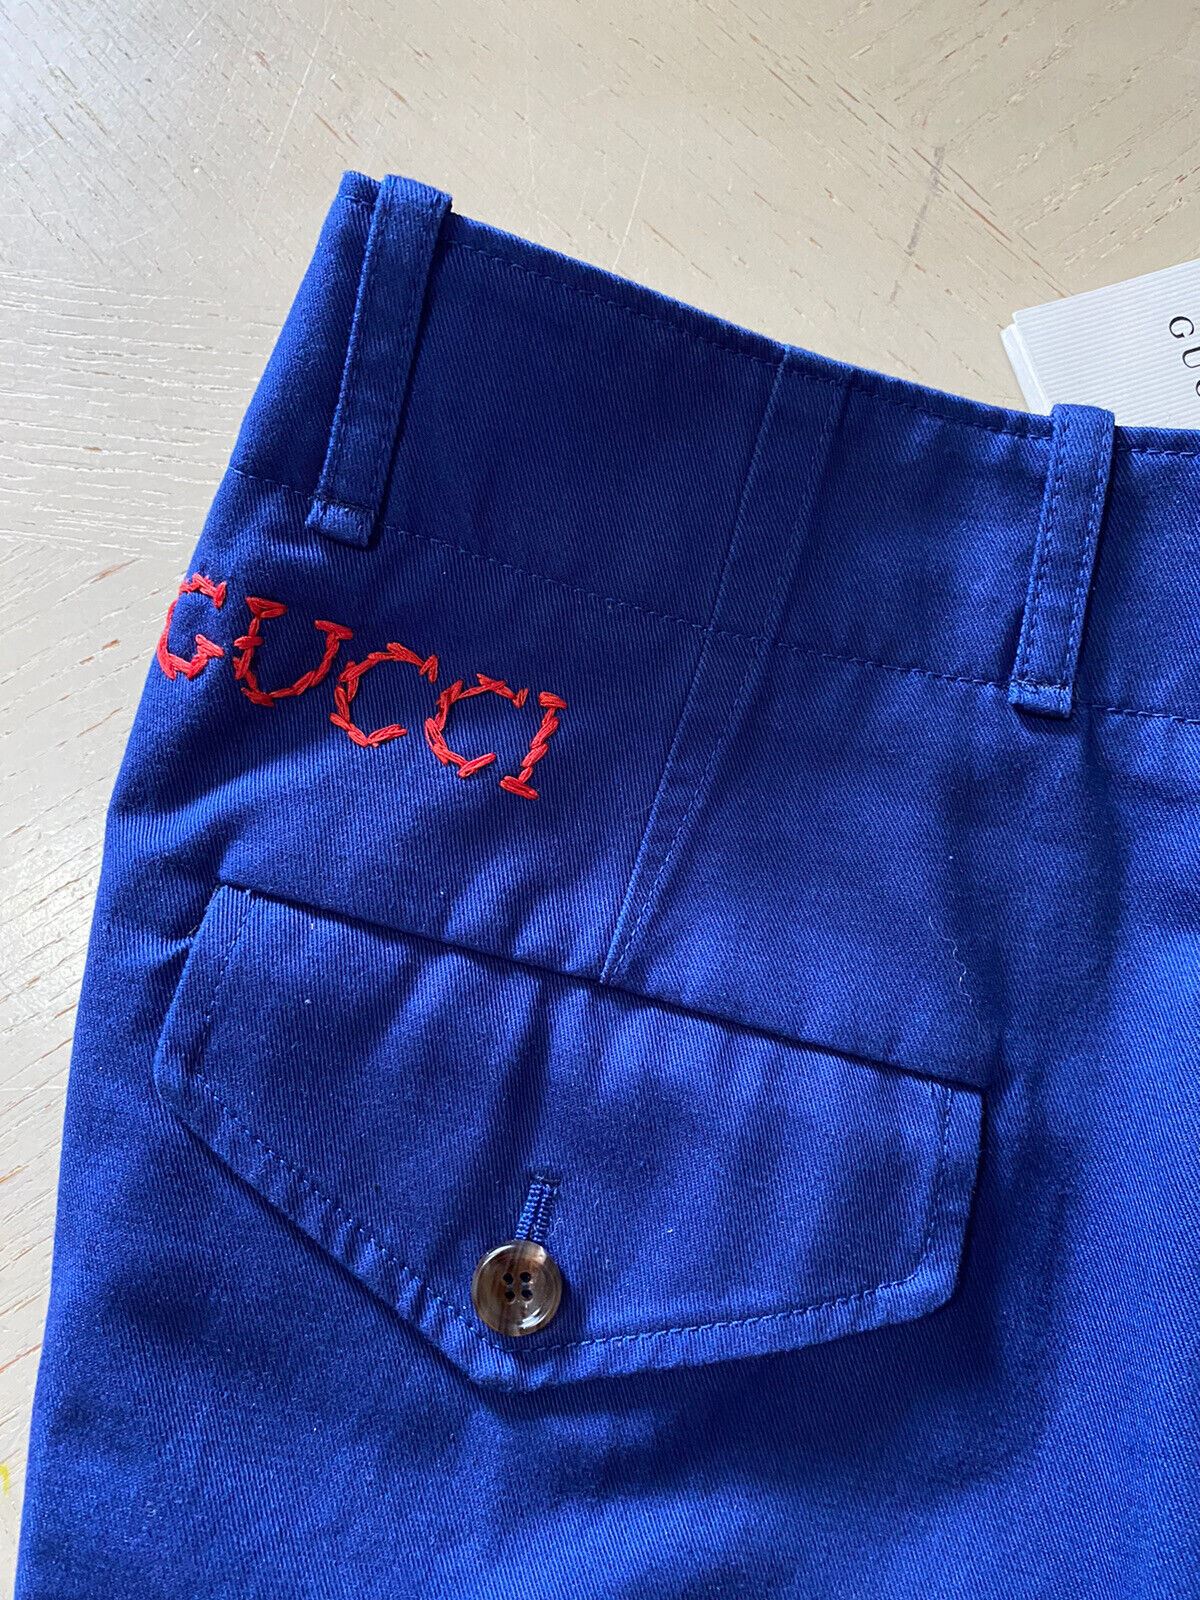 Neu mit Etikett: Gucci Herren-Shorts aus Militär-Baumwolle, Blau, Größe 30 US/46 Eu, Italien